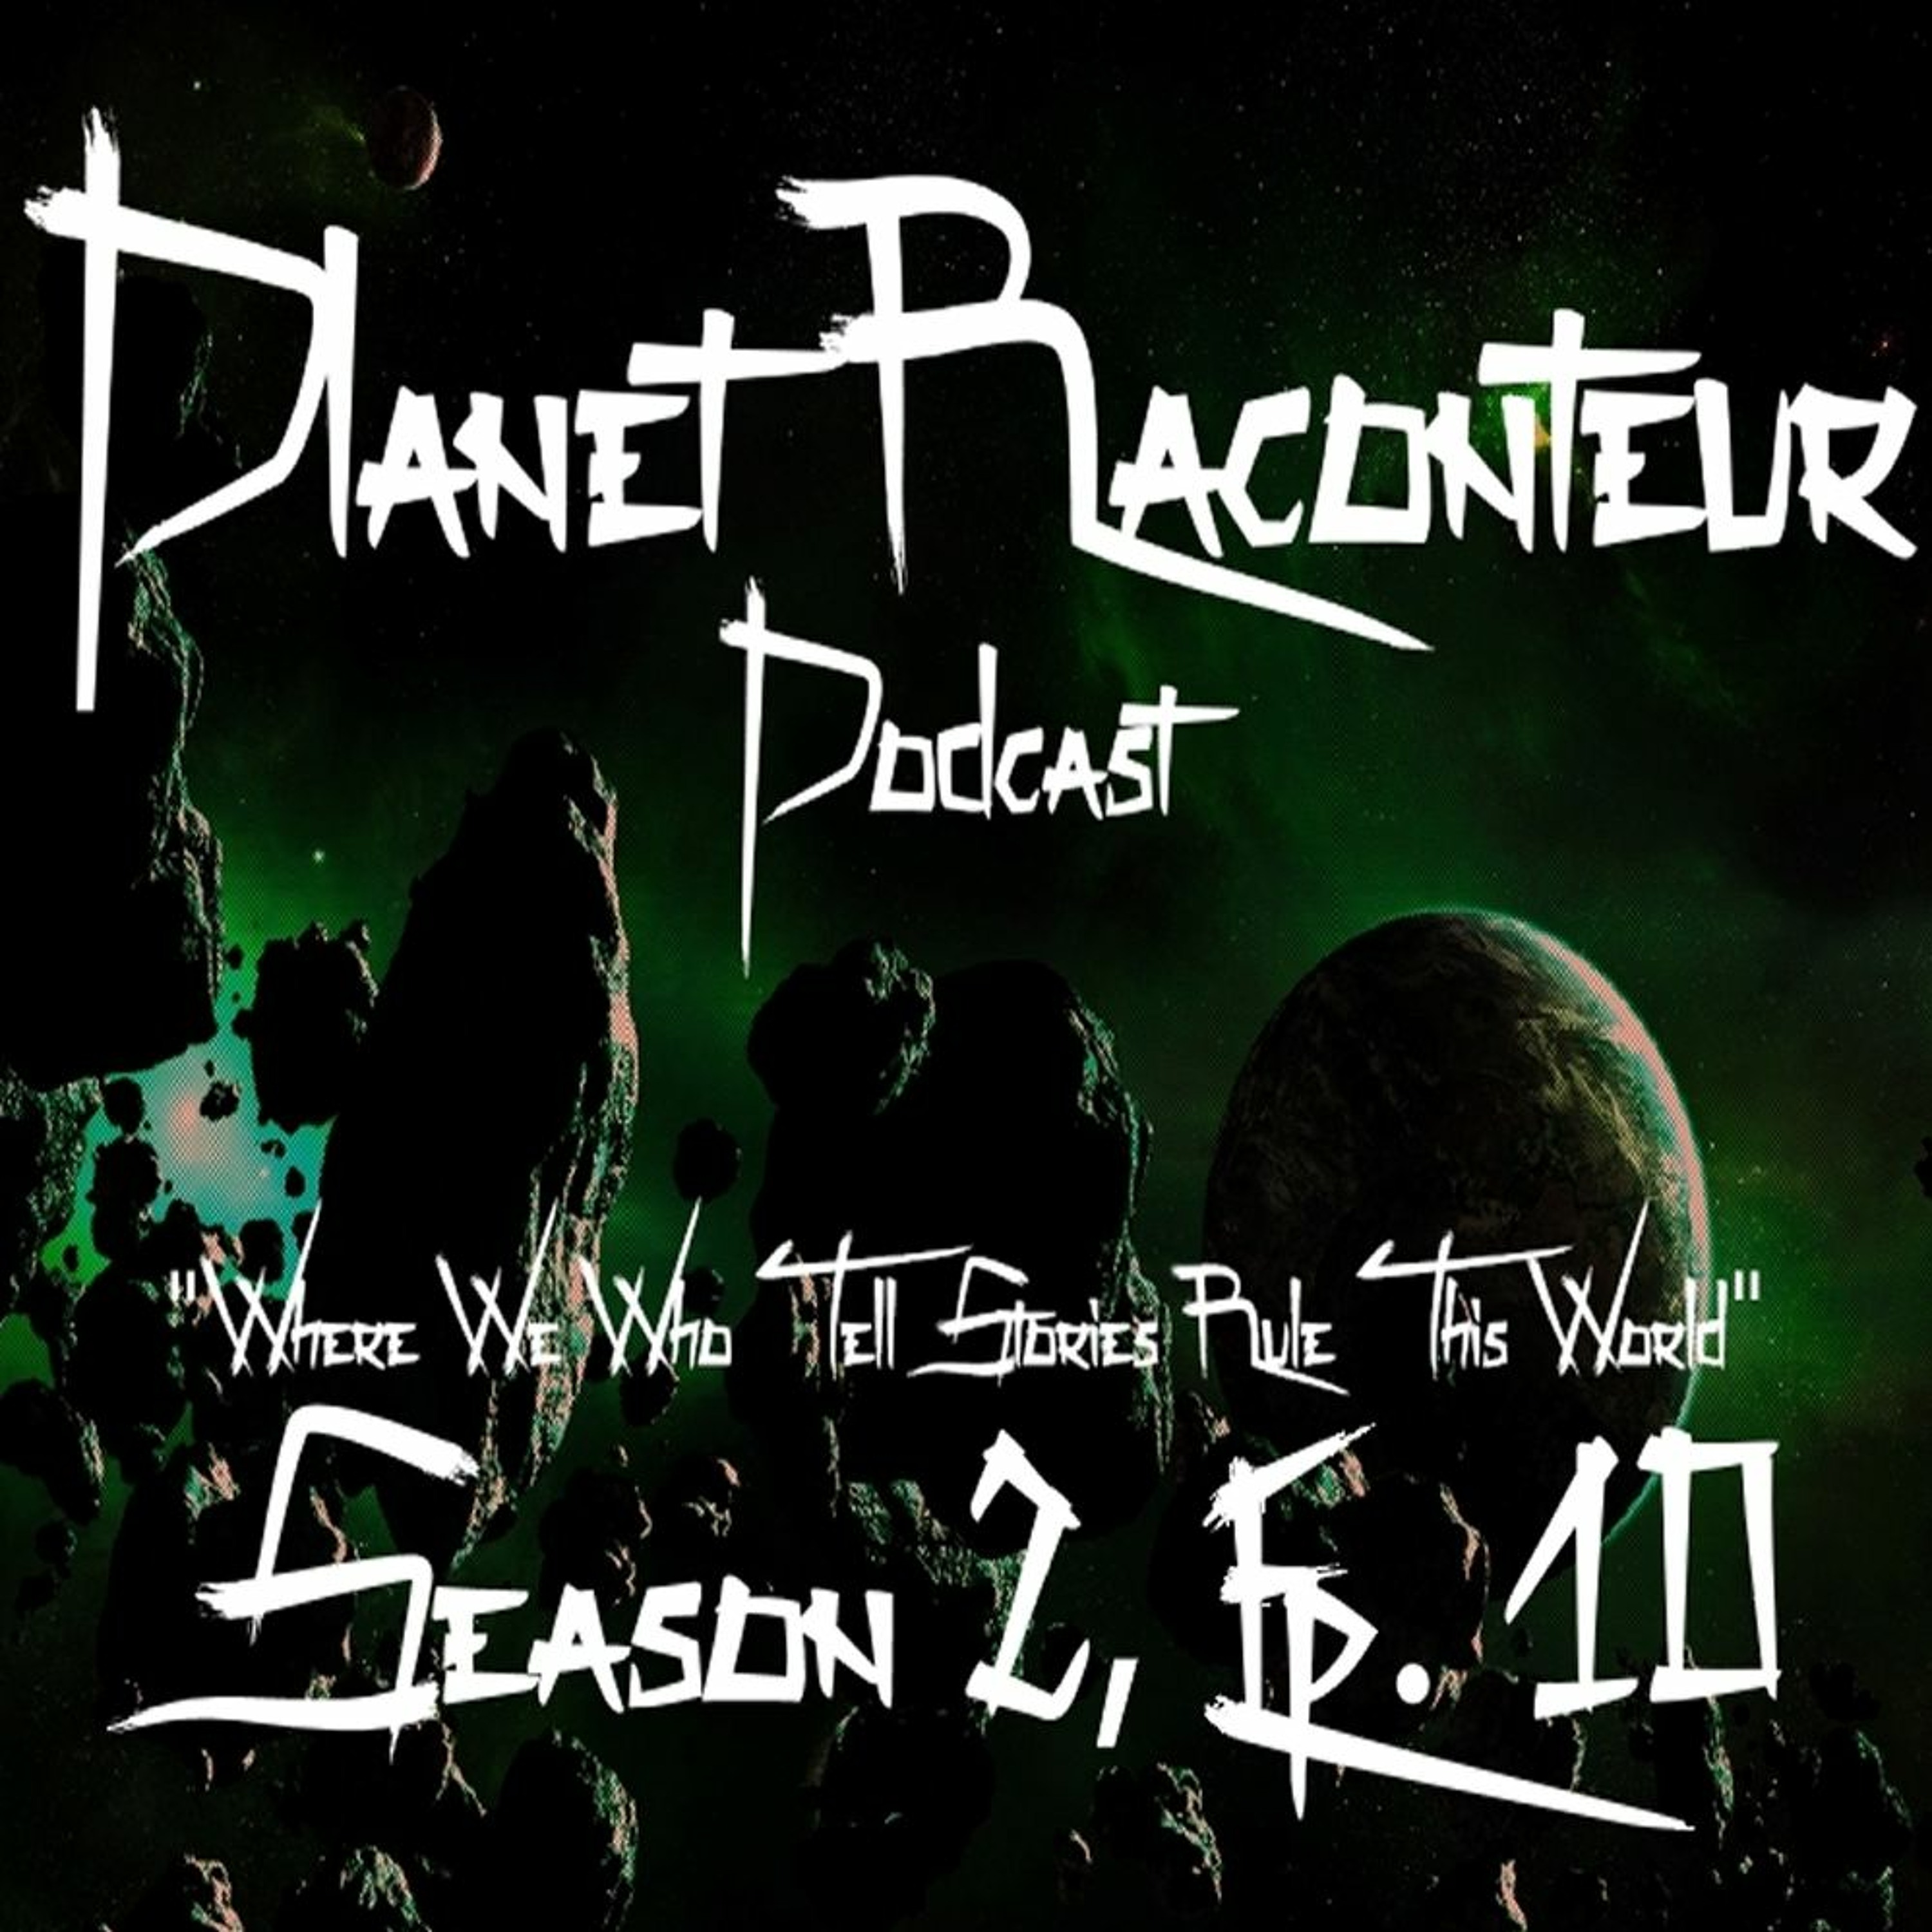 Planet Raconteur podcast - Season 2 episode 10